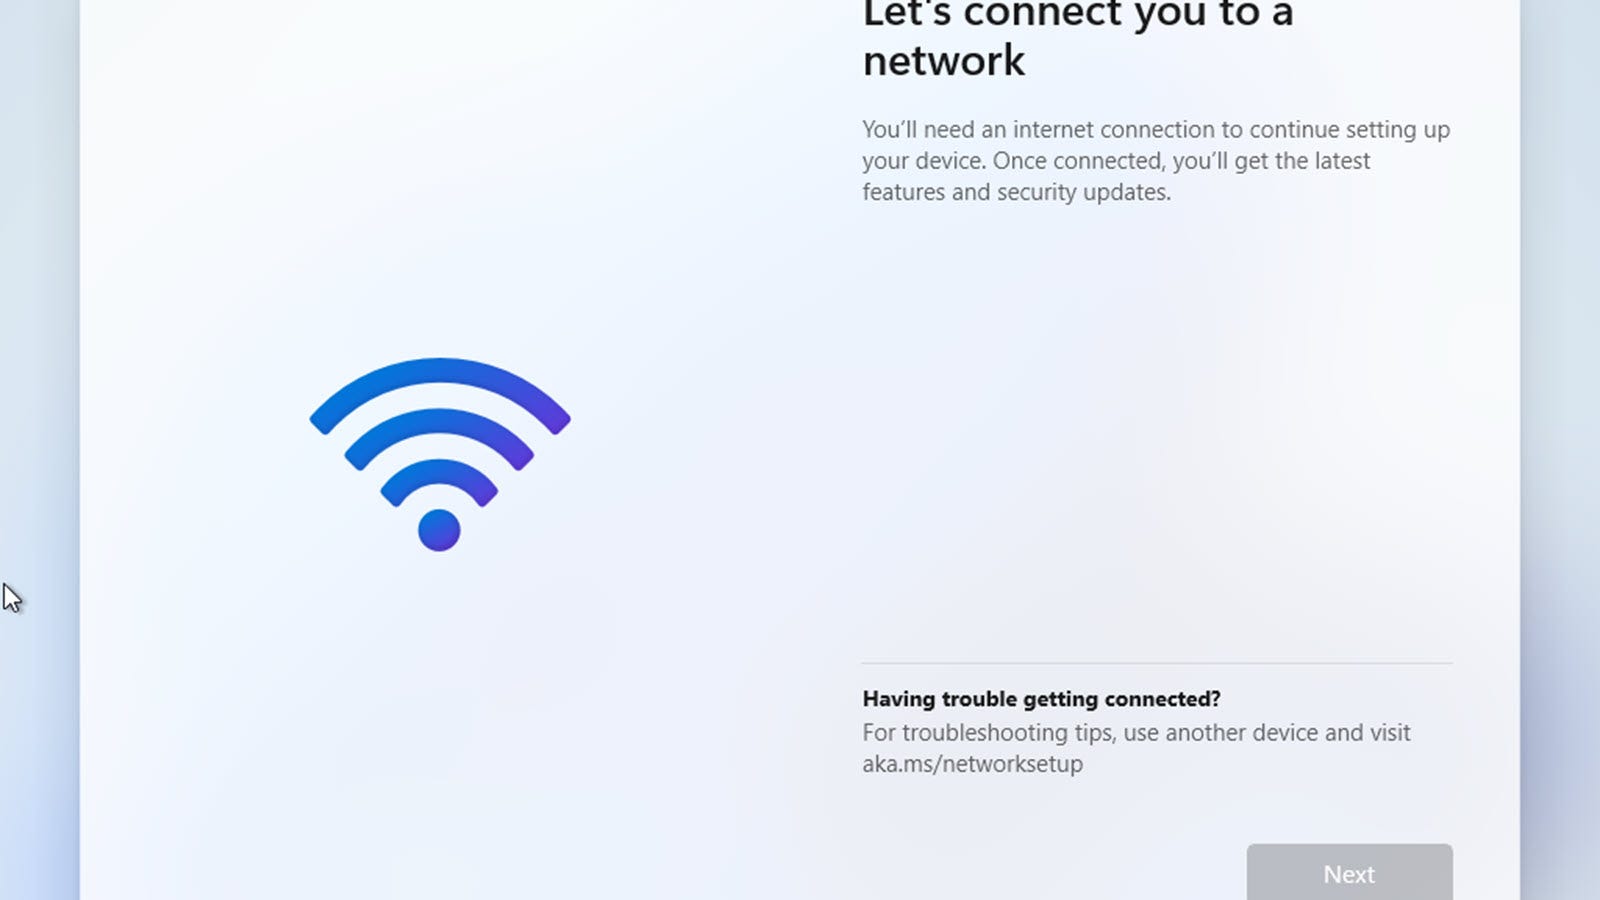 MỘT "hãy kết nối bạn với mạng" màn hình, không có tùy chọn để di chuyển về phía trước.